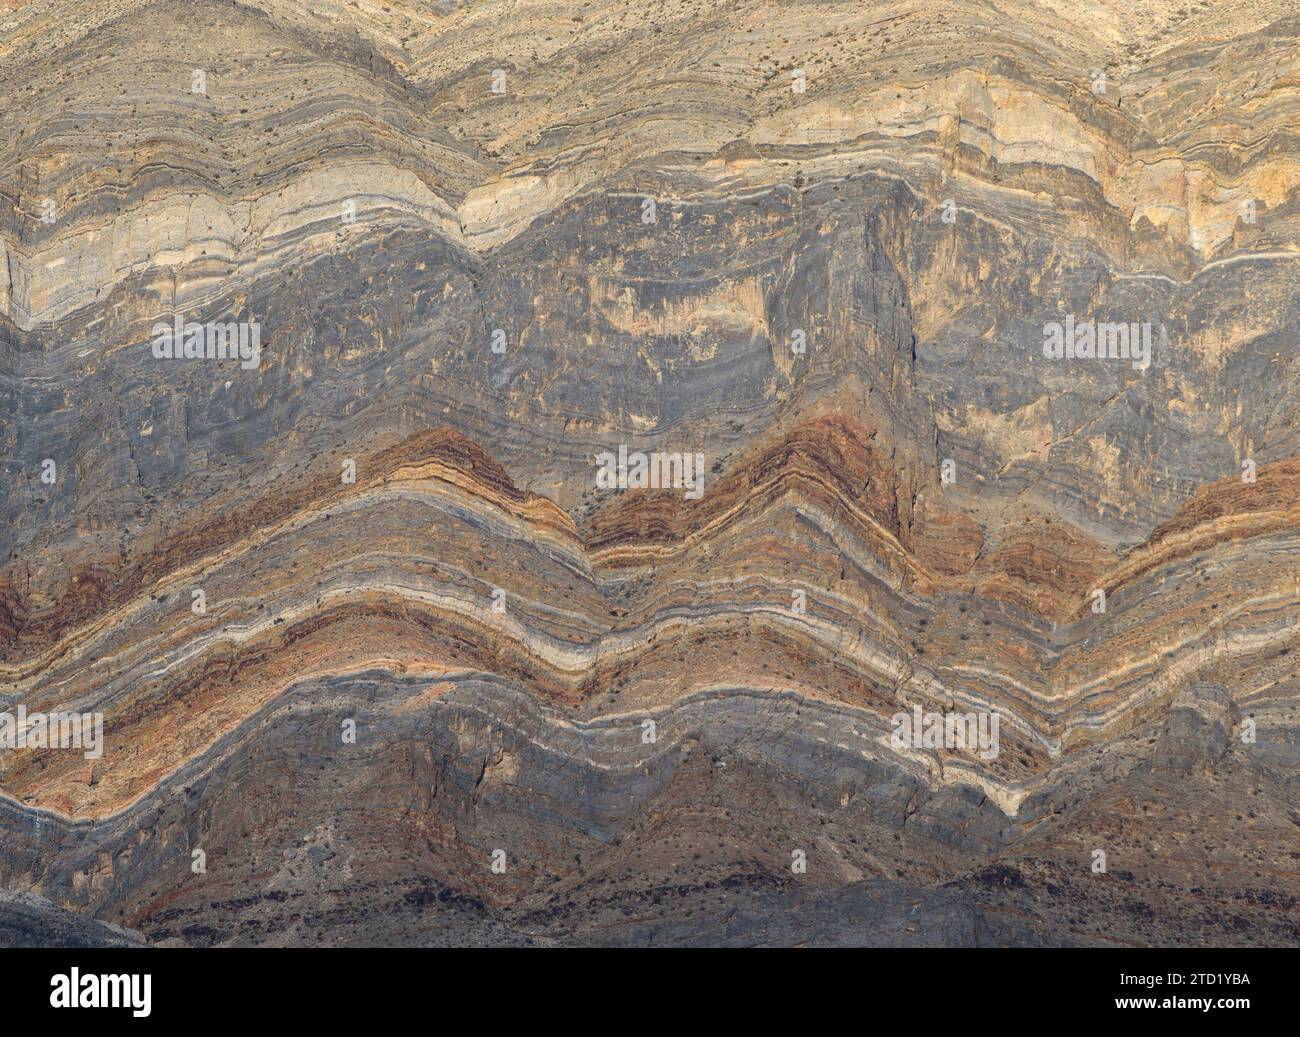 Couches de roches sédimentaires de la formation Cambrian Bonanza King dans la chaîne de la dernière chance à l'est d'Eureka Dunes ; parc national de la Vallée de la mort, Californie. Banque D'Images